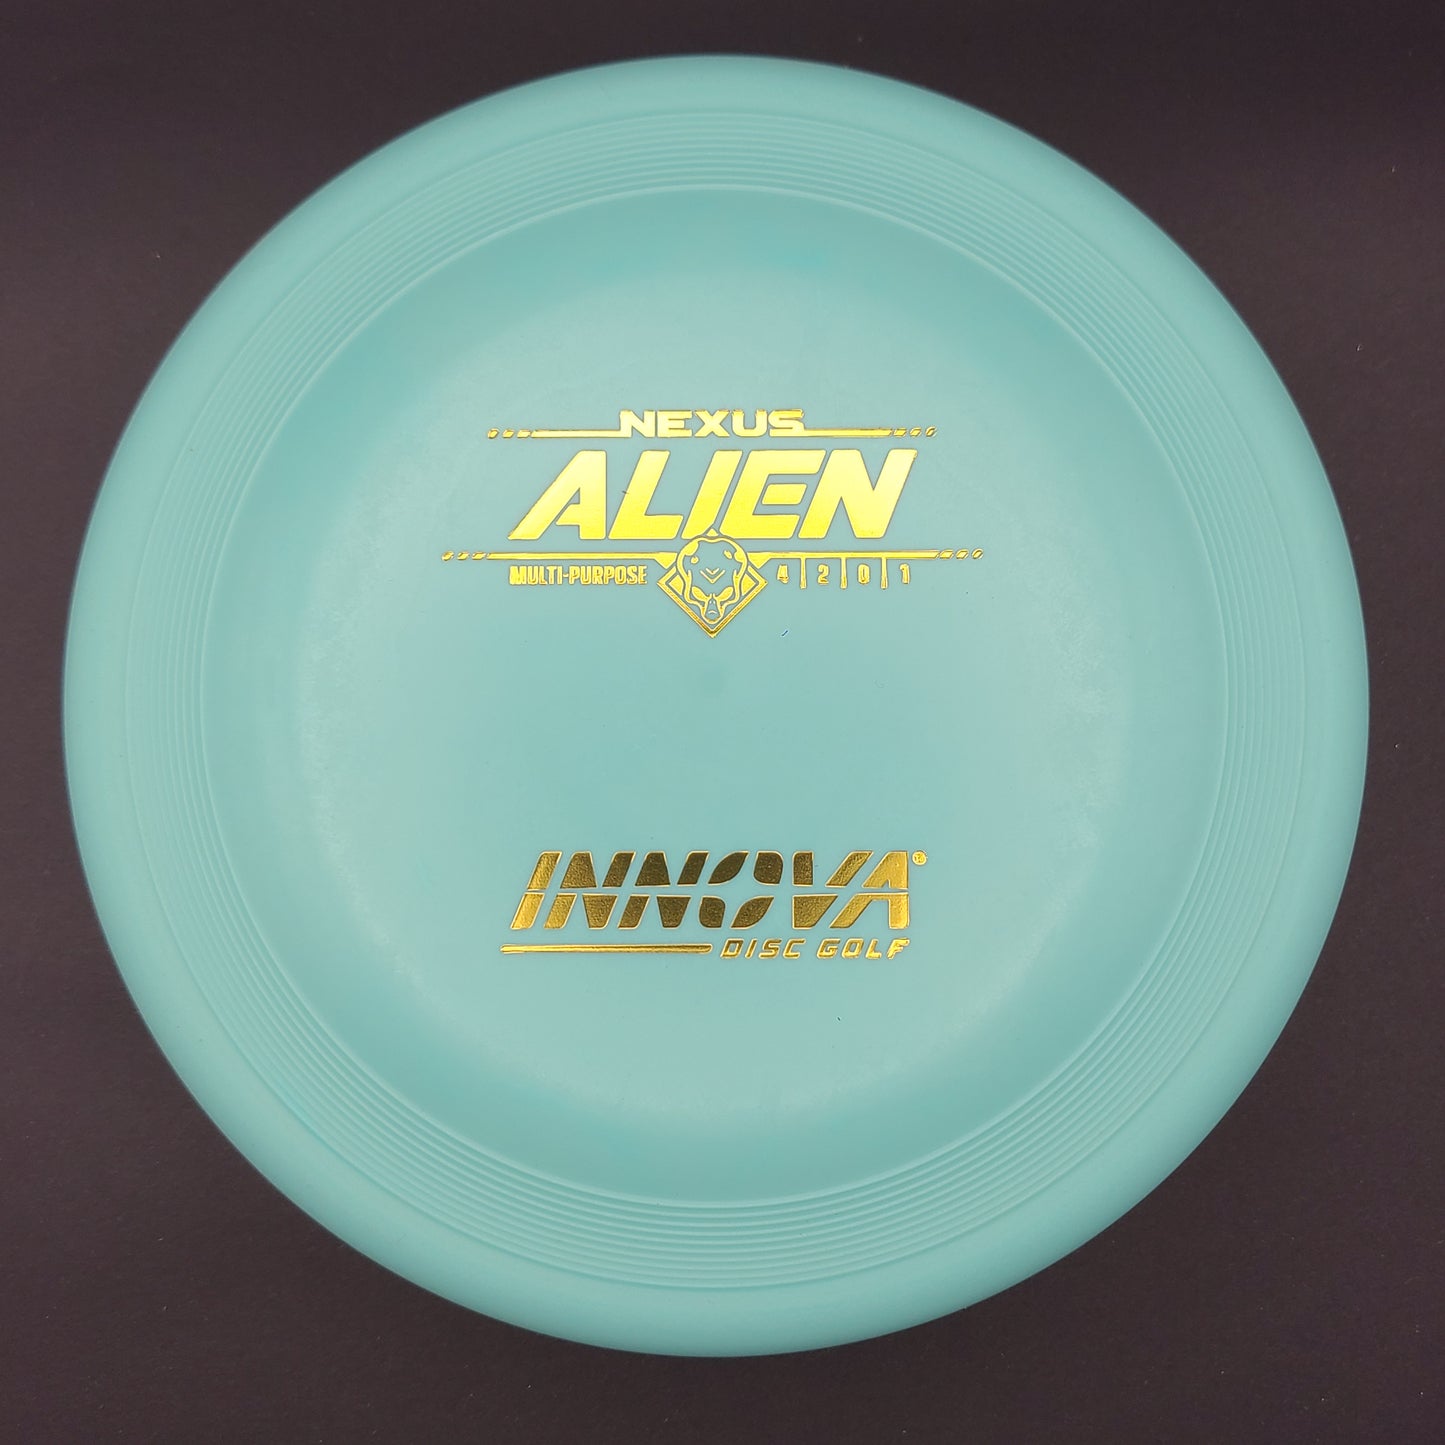 Innova - Alien - Nexus